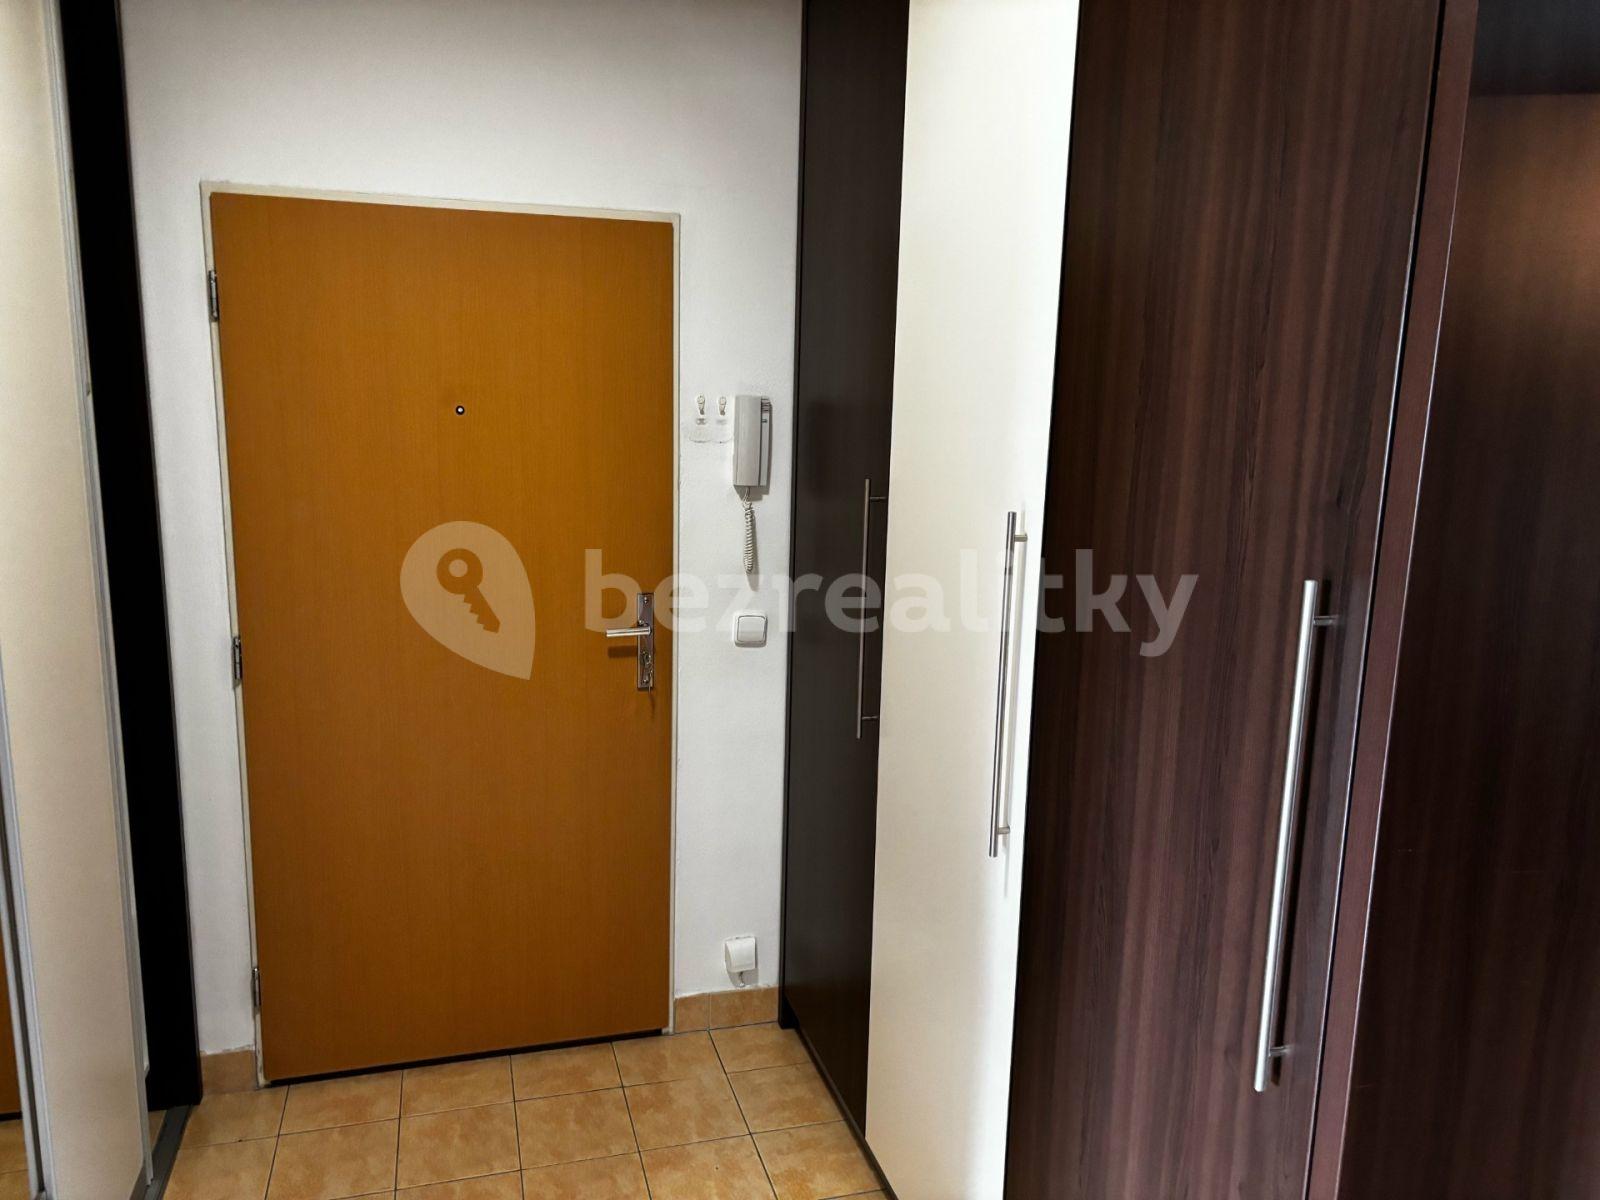 1 bedroom with open-plan kitchen flat to rent, 55 m², Na kovárně, Brno, Jihomoravský Region